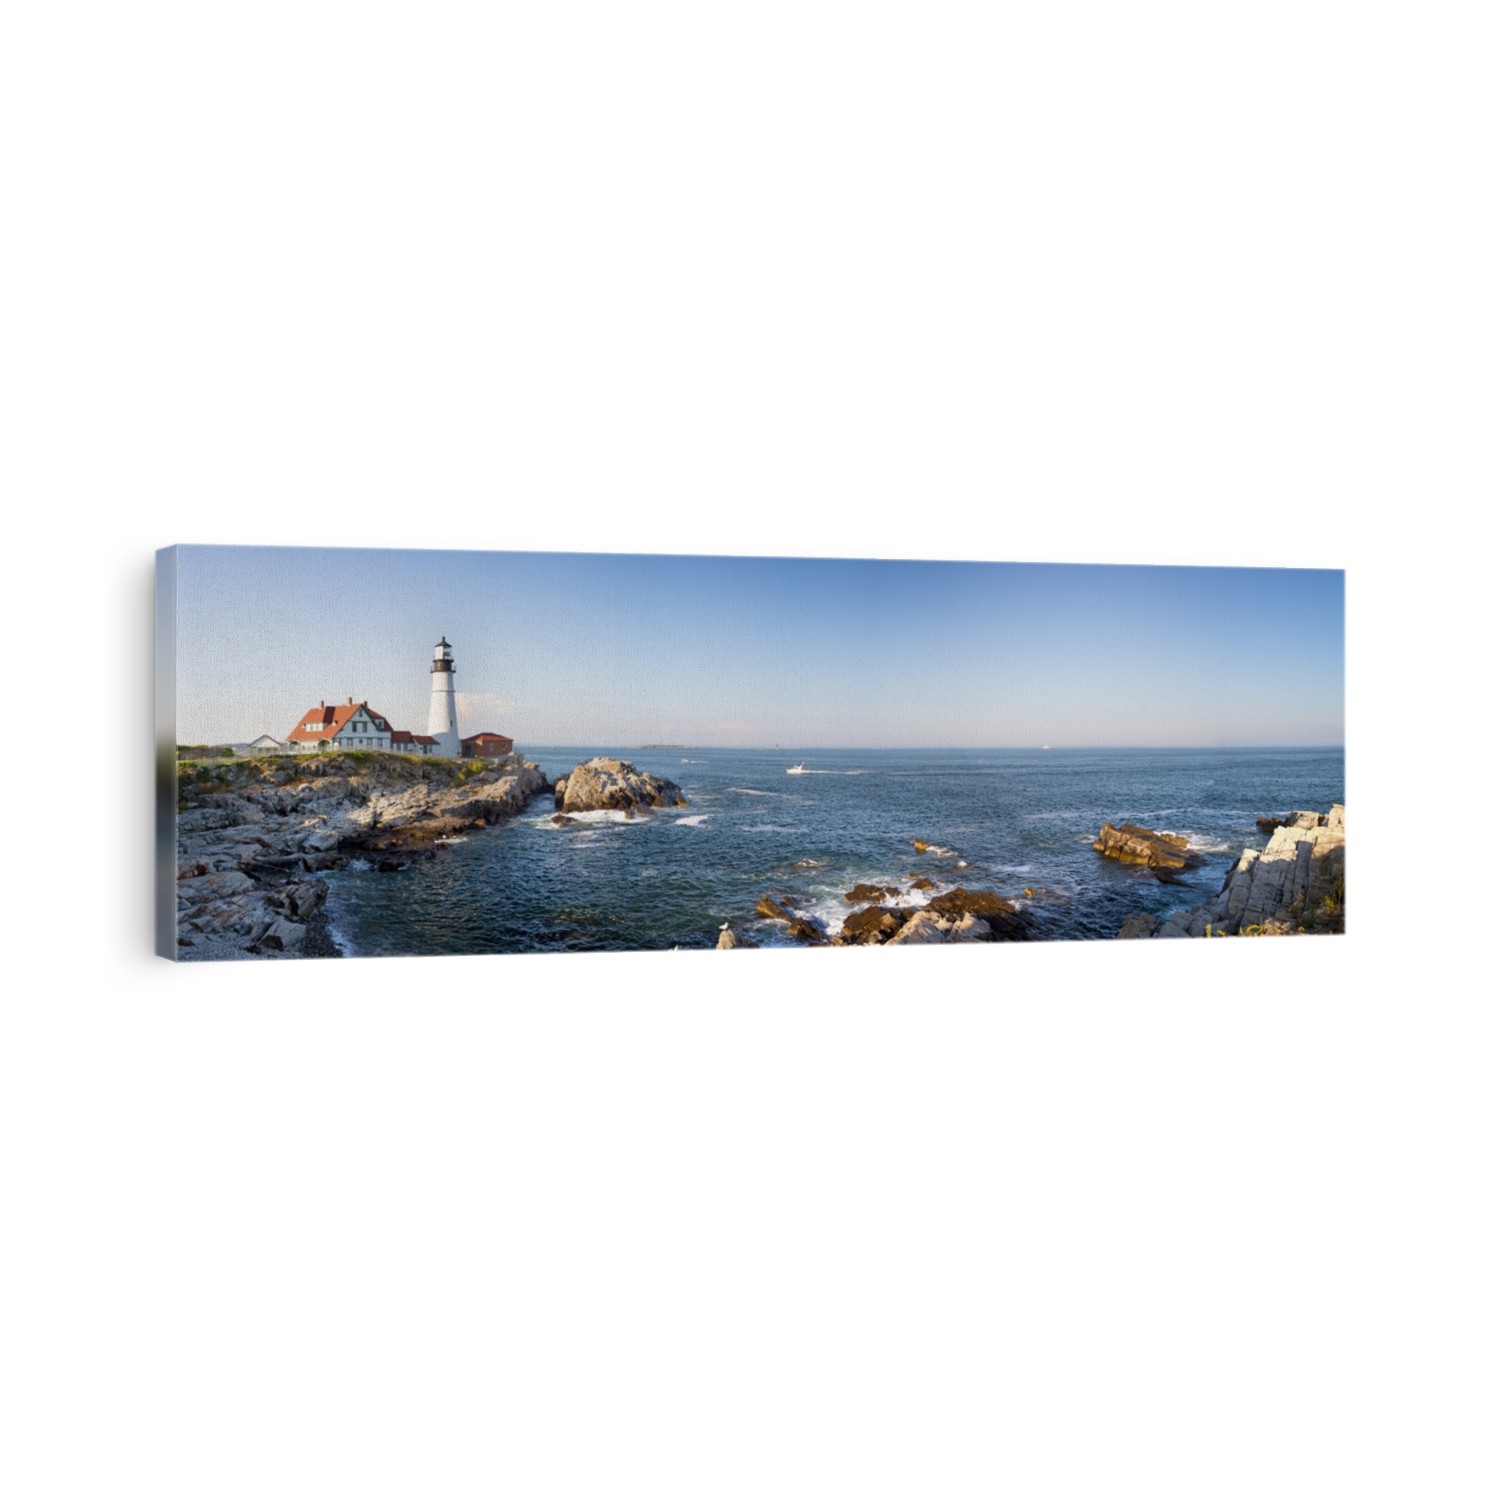 A panorama of the Portland Head lighthouse and rugged coastline, Maine, USA